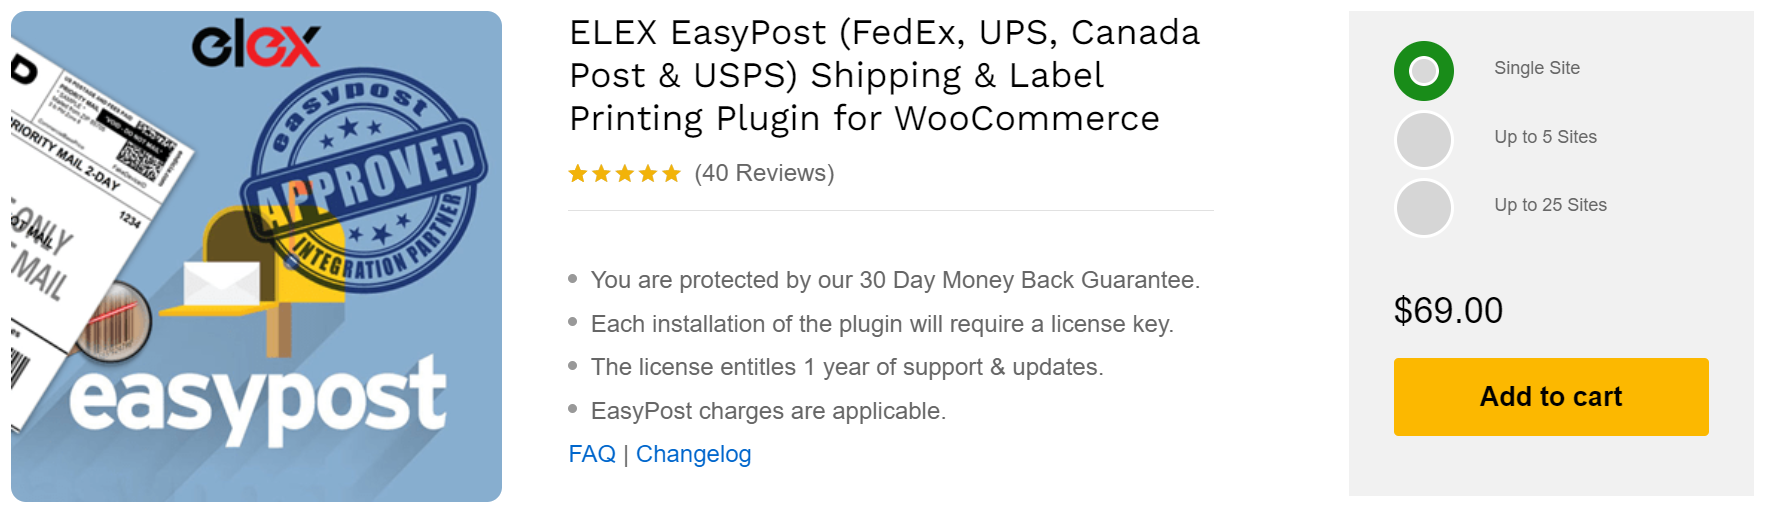 ELEX EasyPost (FedEx, UPS, Canada Post & USPS) Shipping & Label Printing Plugin 